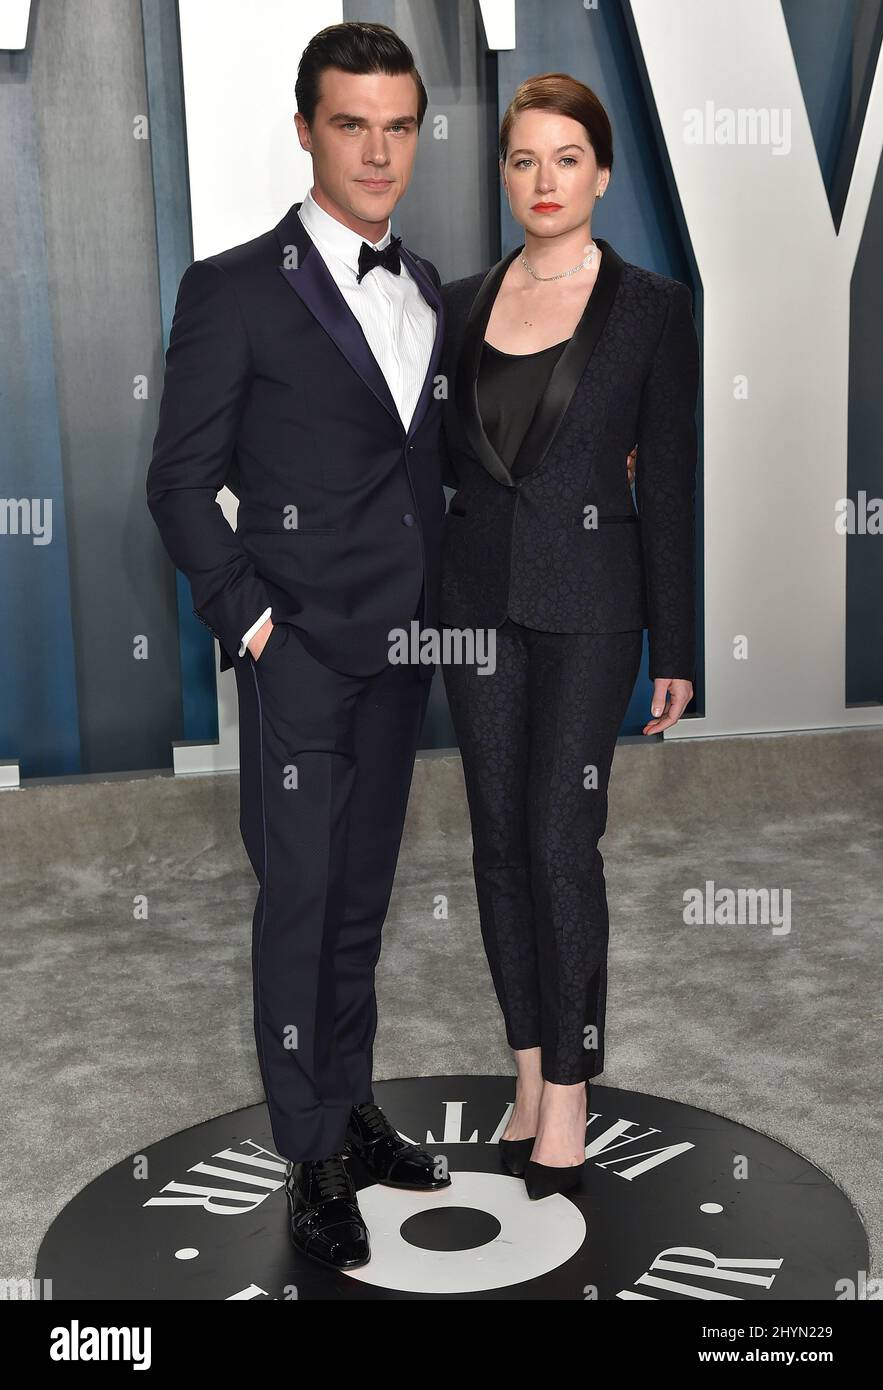 Finn Wittrock e Sarah Roberts partecipano al Vanity Fair Oscar Party 2020 che si è tenuto presso il Waris Annenberg Center for the Performing Arts di Beverly Hills, California Foto Stock